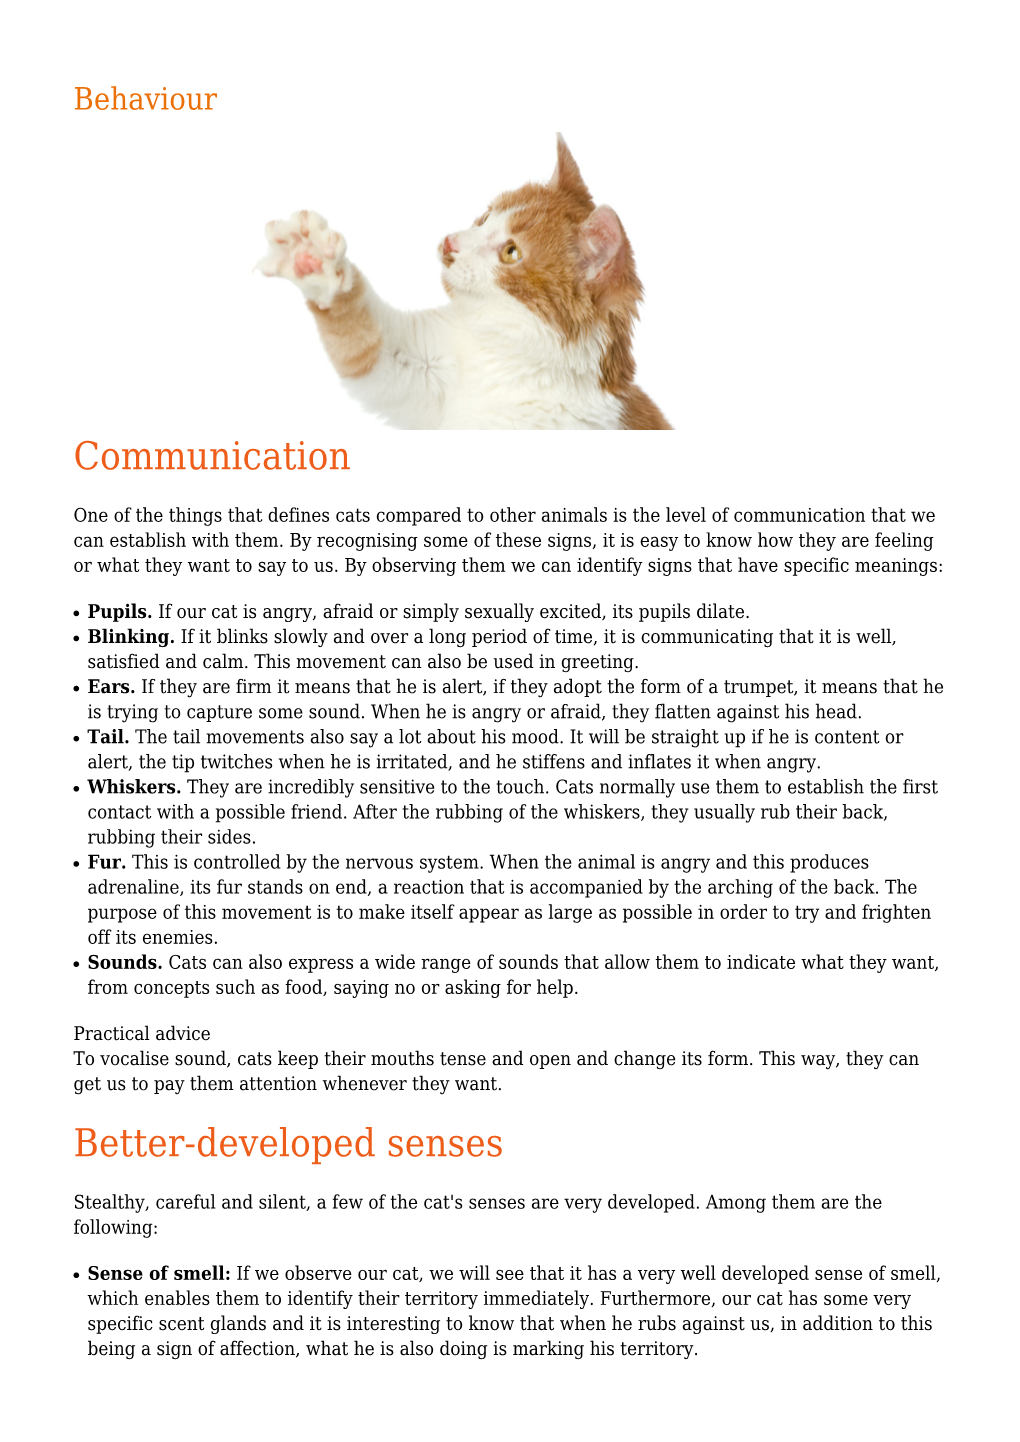 Communication Better-Developed Senses